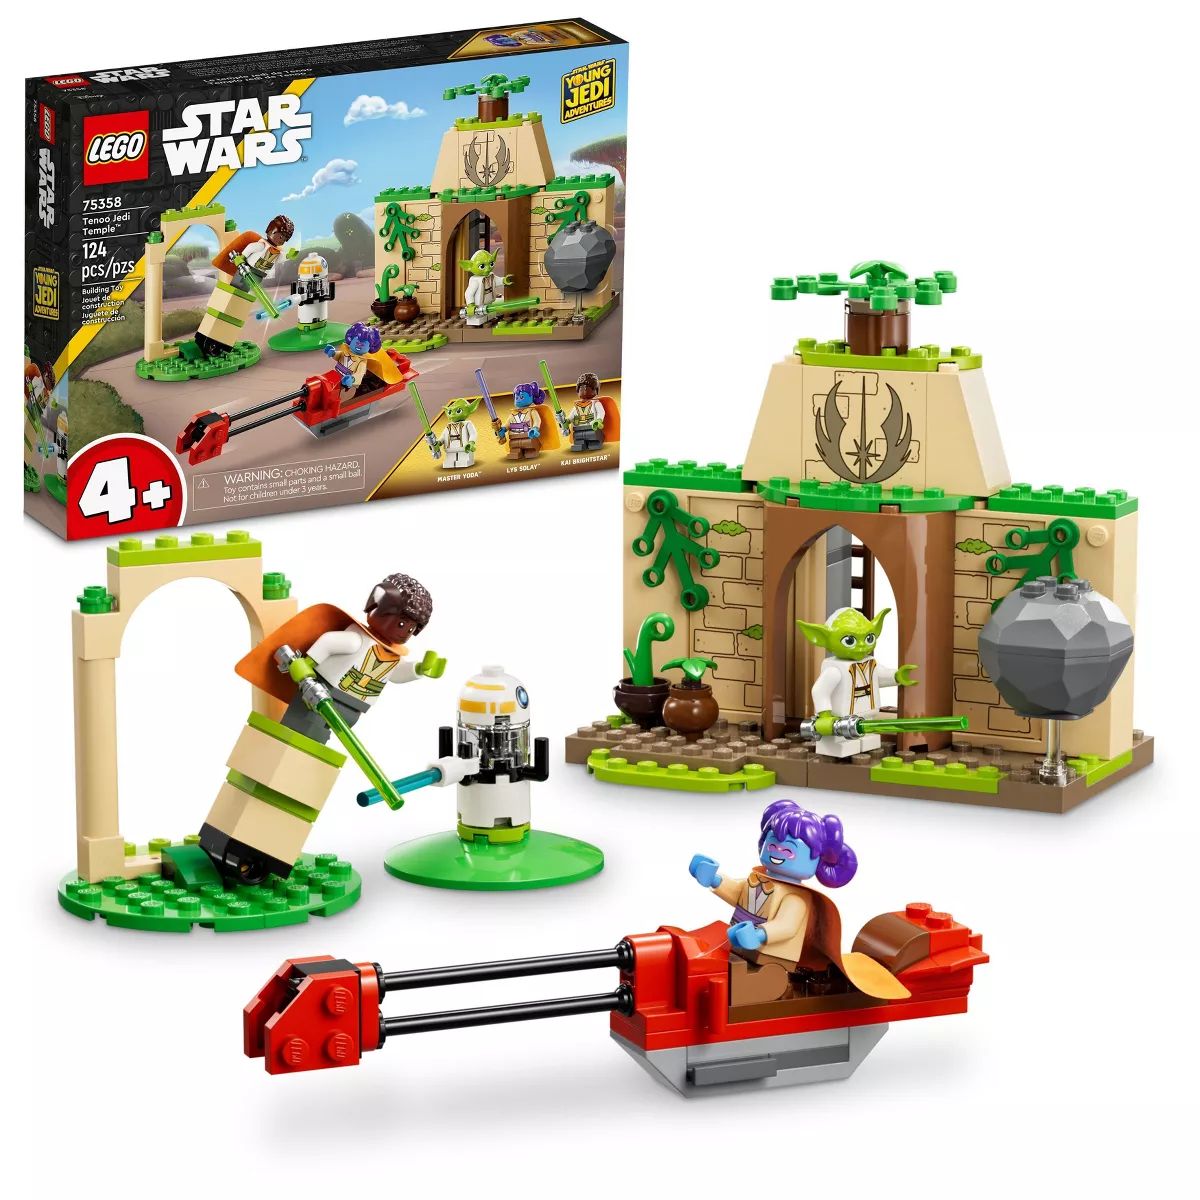 LEGO Star Wars Tenoo Jedi Temple Building Toy Set for Preschoolers 75358 | Target